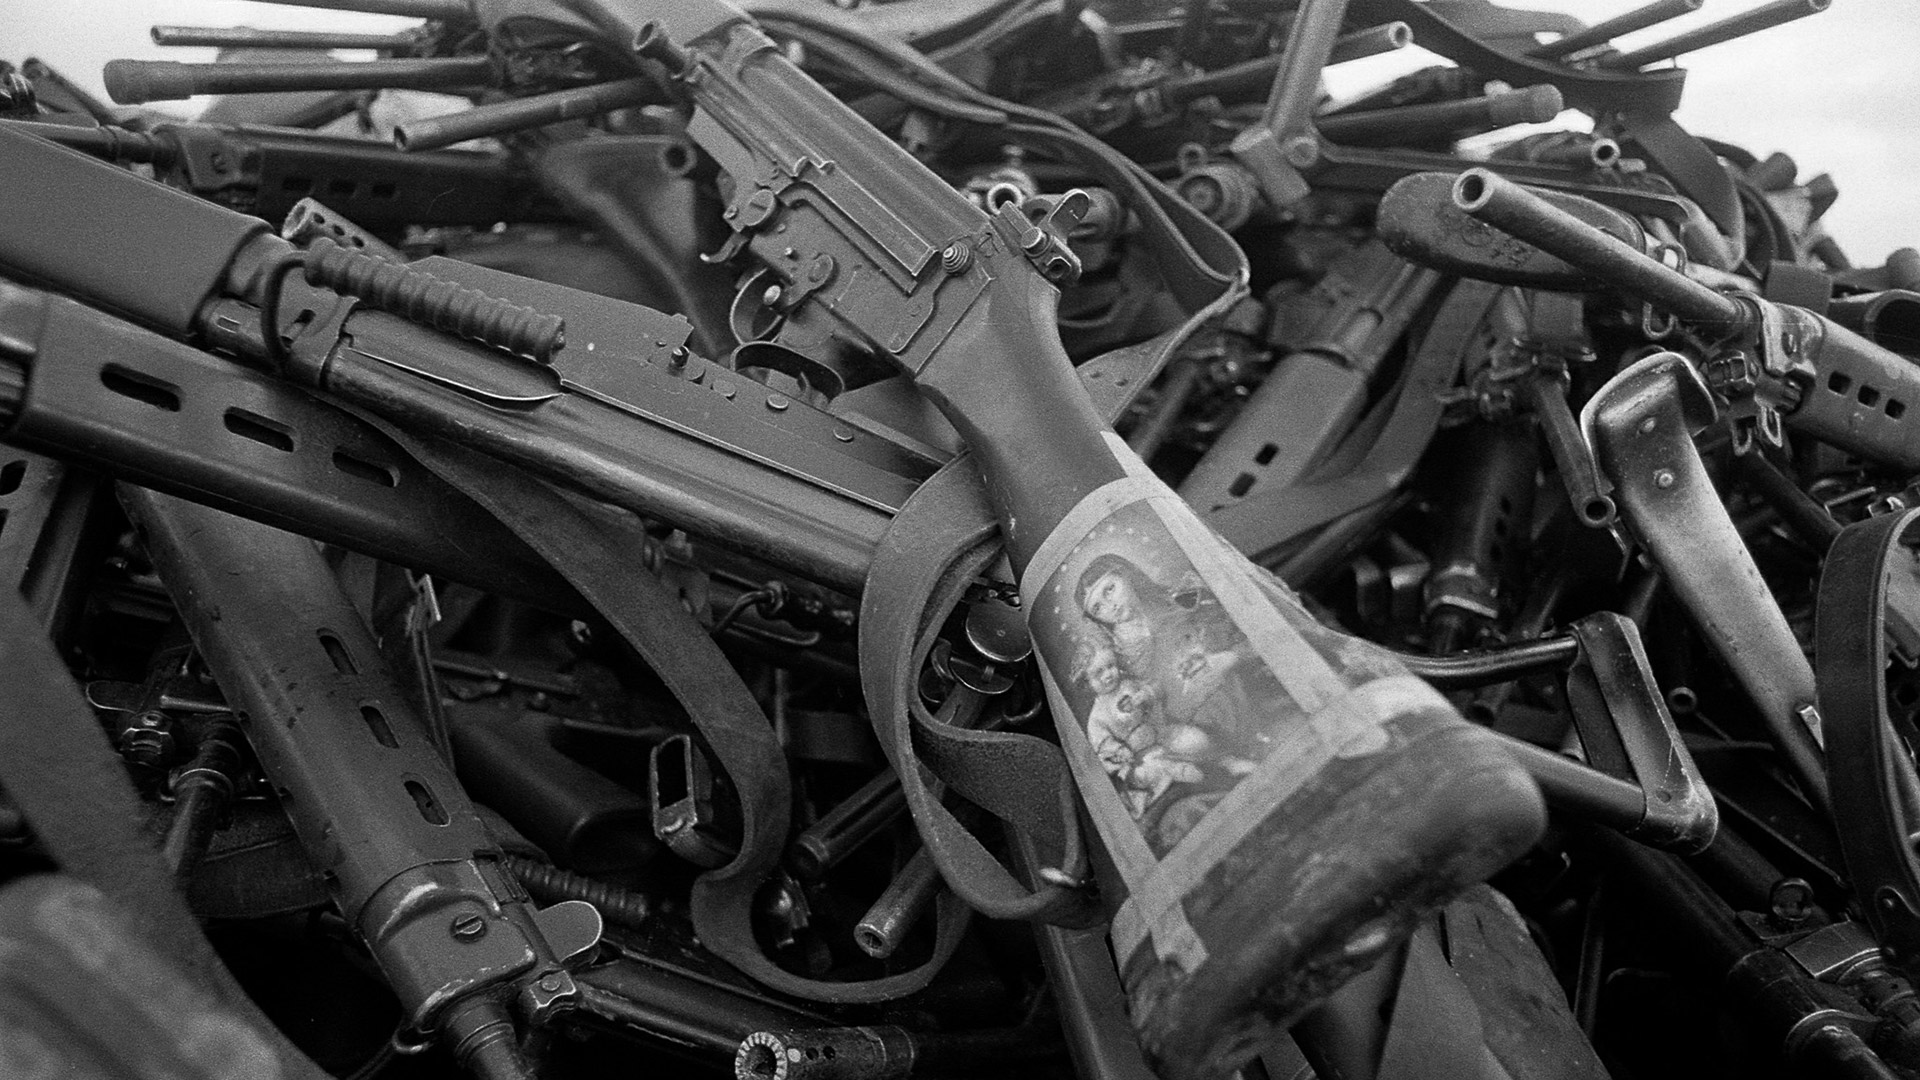 Una estampita de la Virgen María y el Niño Jesús en un fusil argentino, arrojado a una pila de armamento entregado por nuestros soldados luego del cese de fuego el 14 de junio de 1982 (Foto: Paul Haley, Soldier Magazine, IWM)